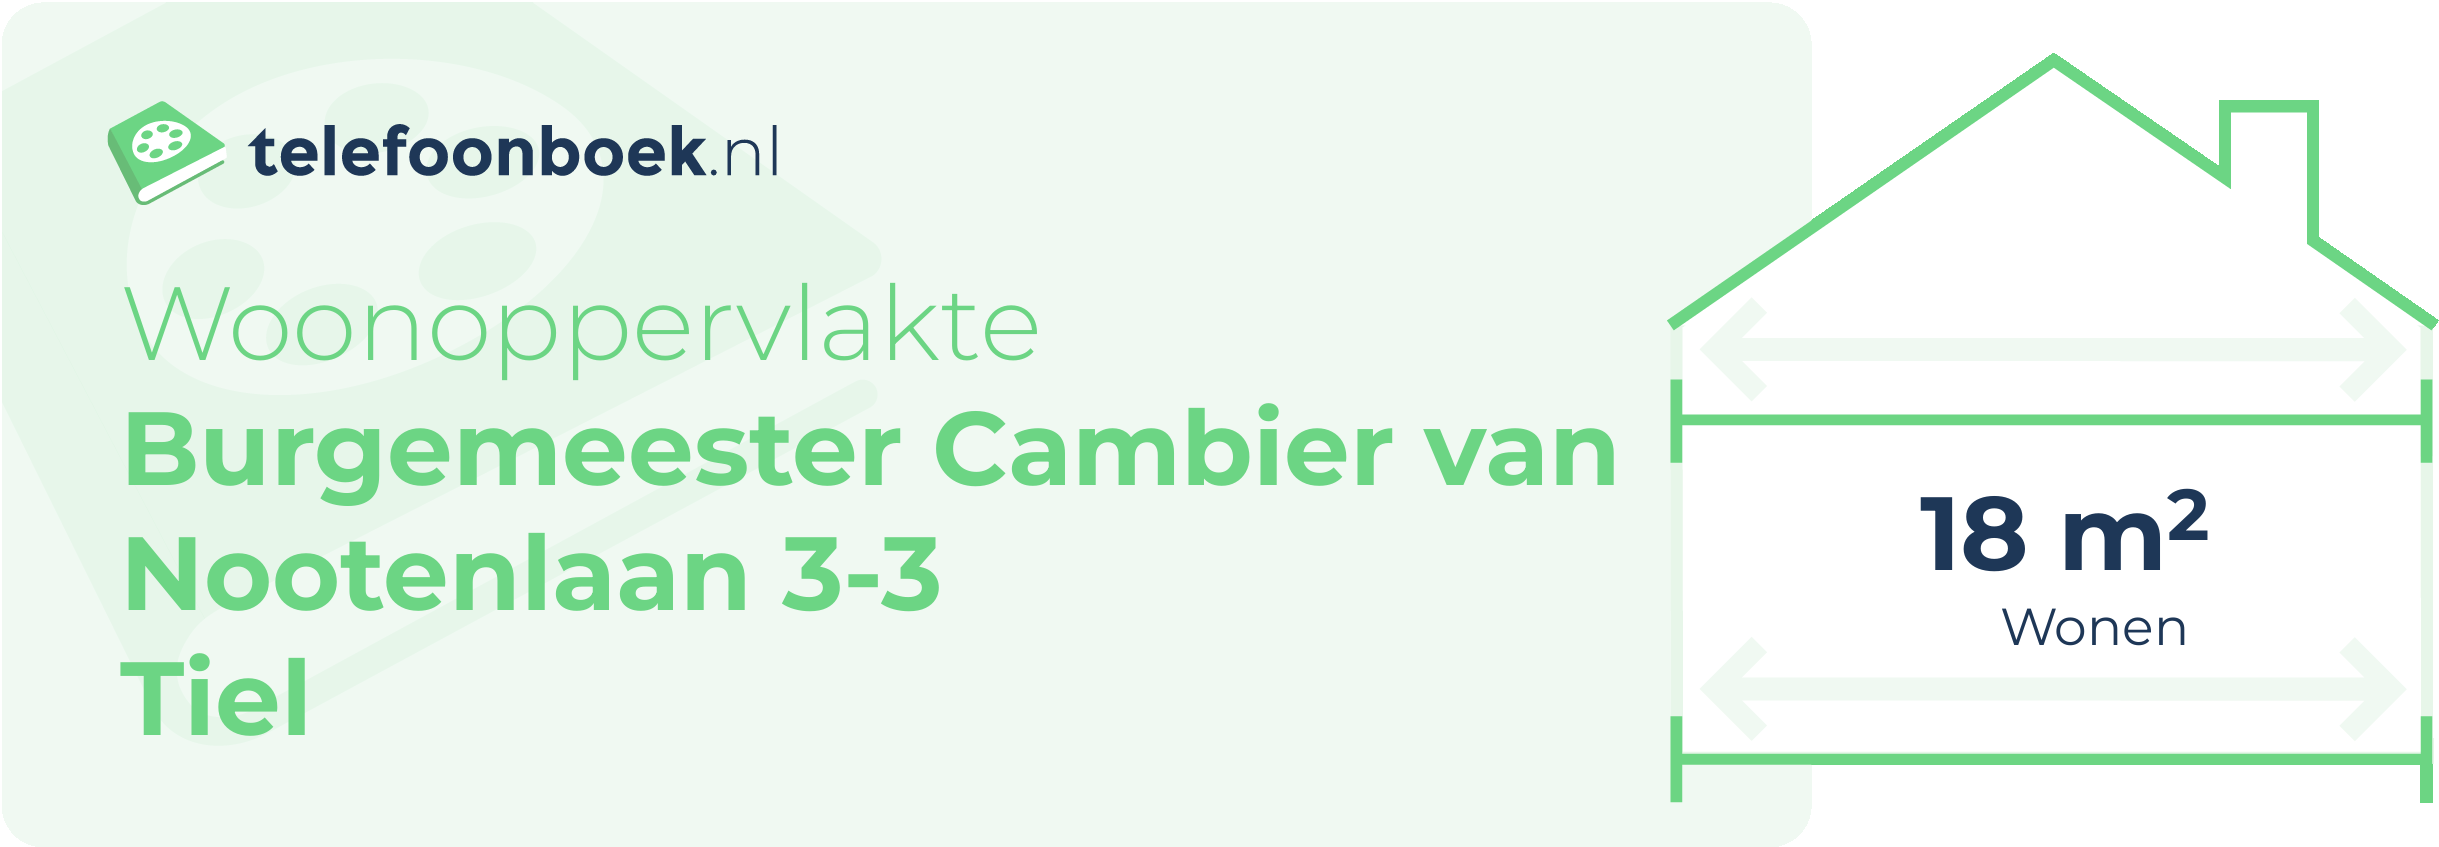 Woonoppervlakte Burgemeester Cambier Van Nootenlaan 3-3 Tiel